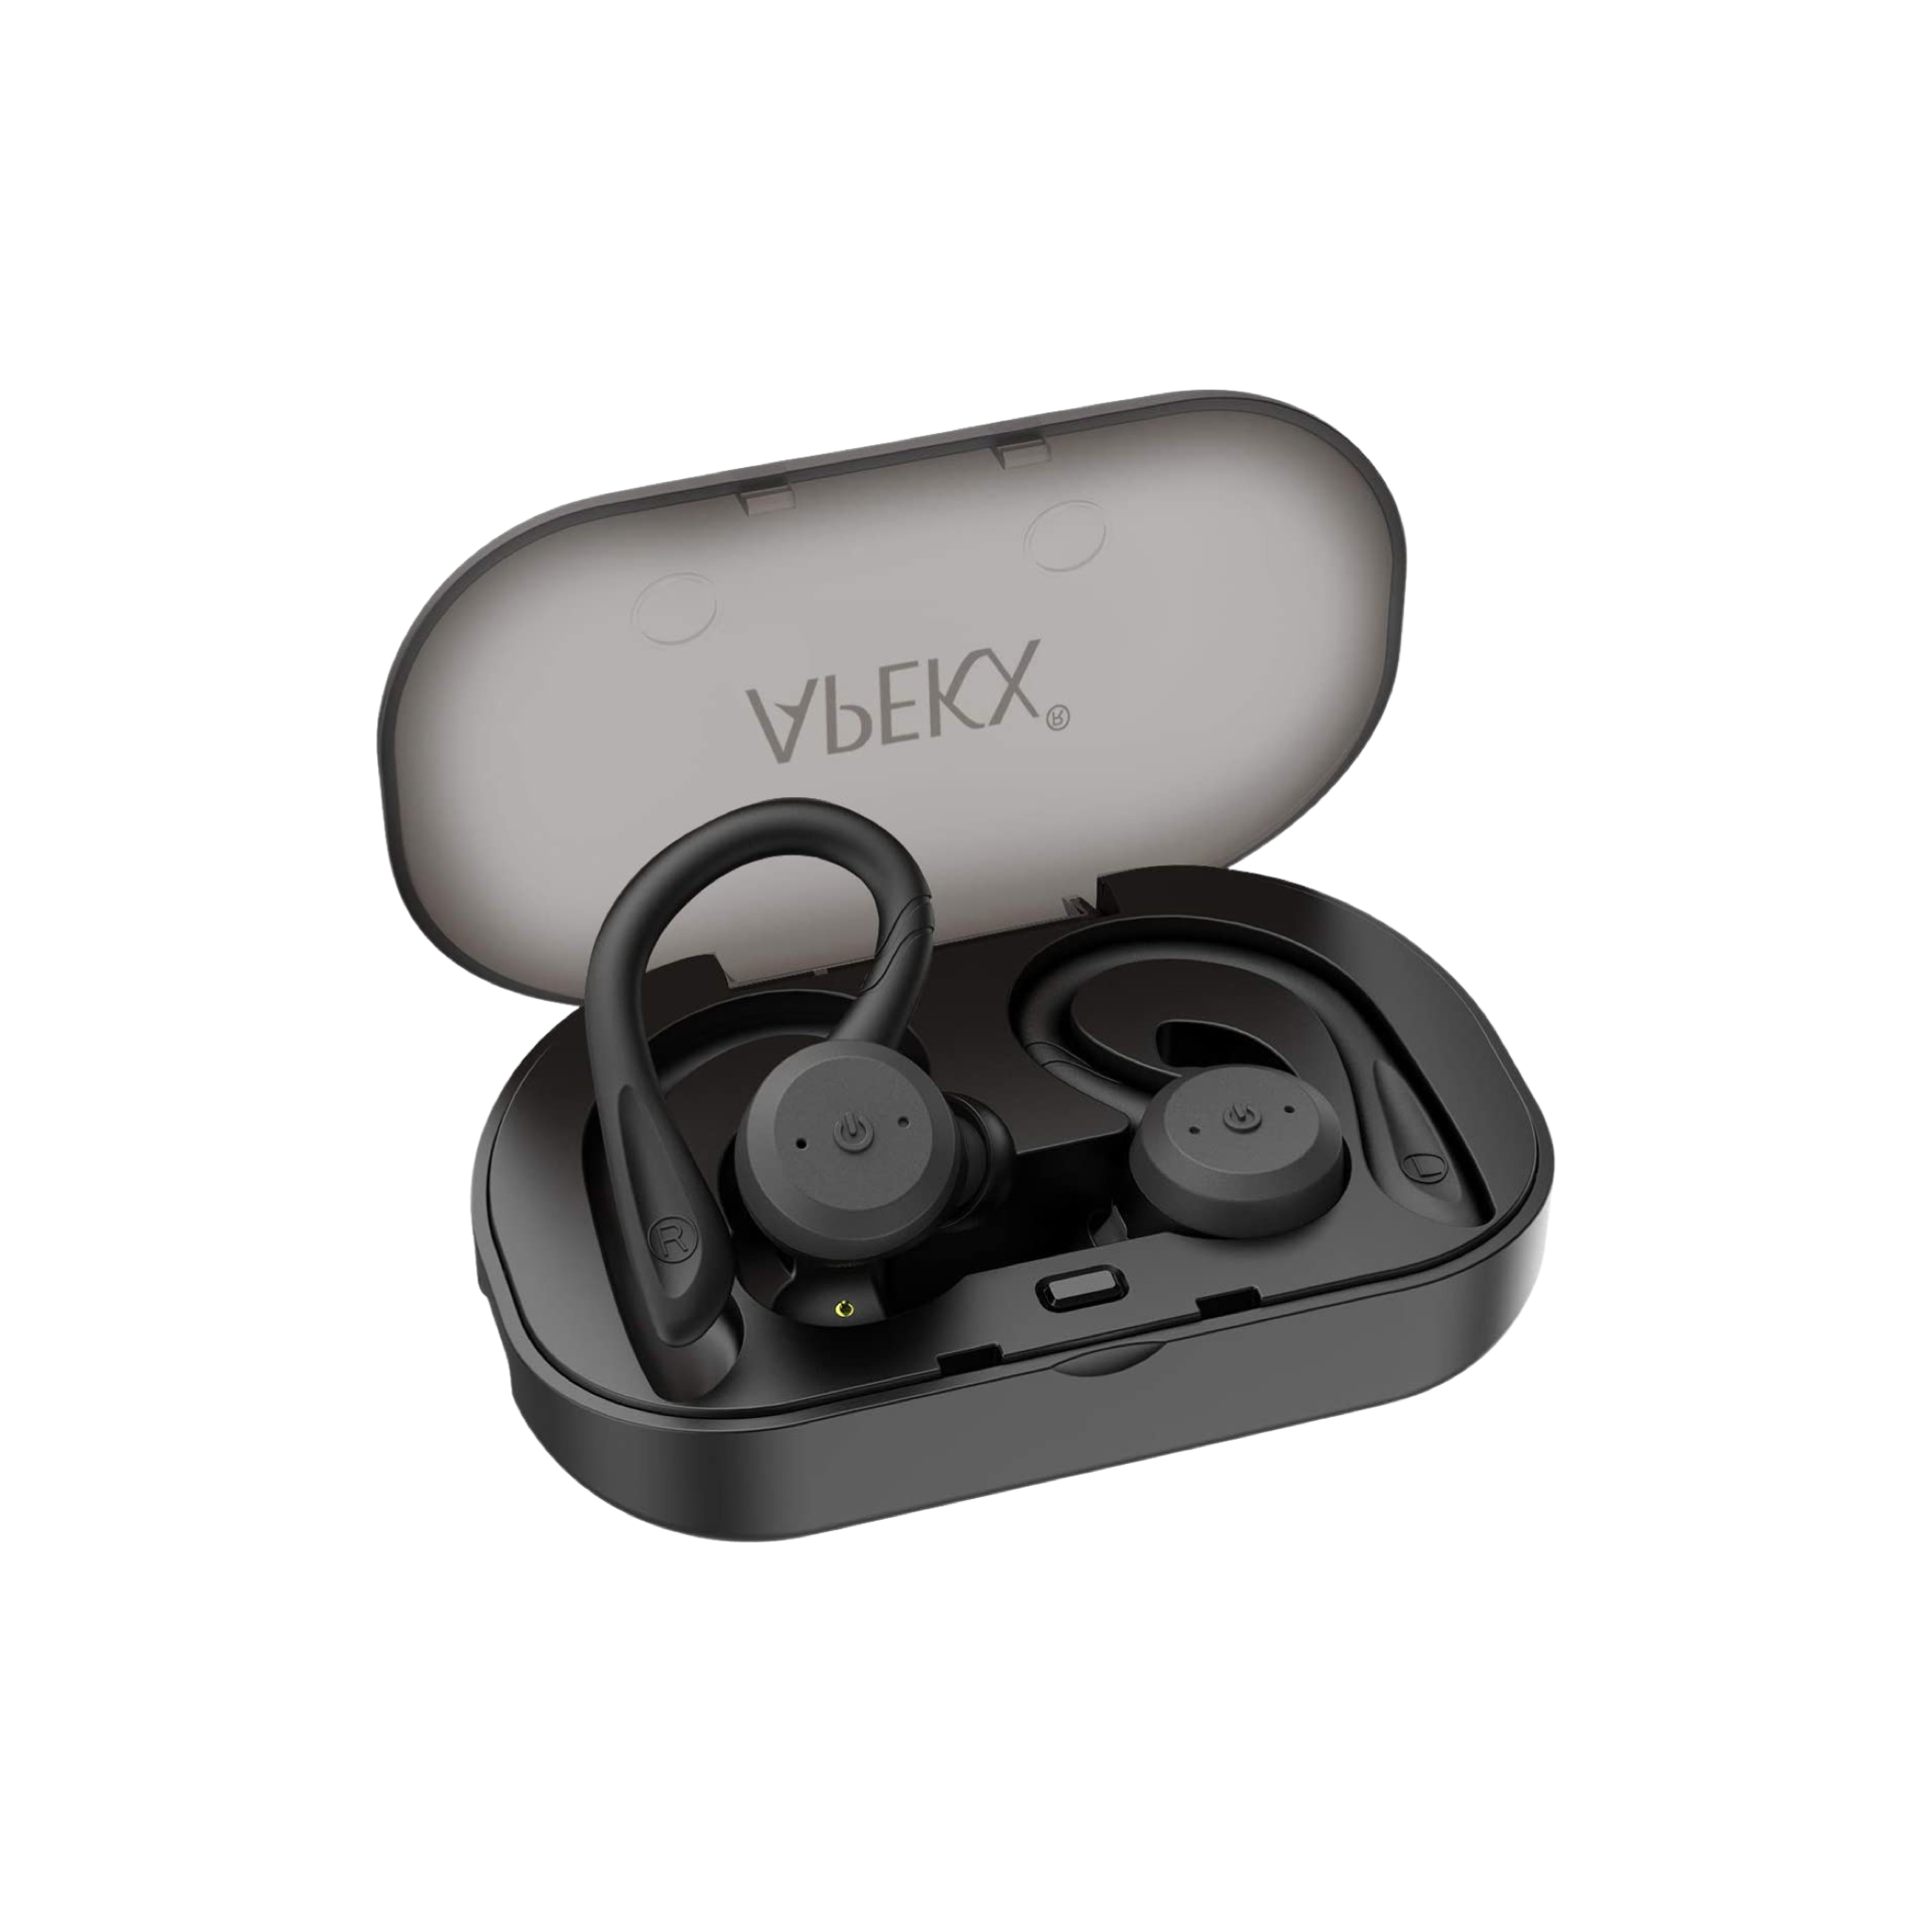 Best Bluetooth Earbuds Apekx True Wireless Earphones